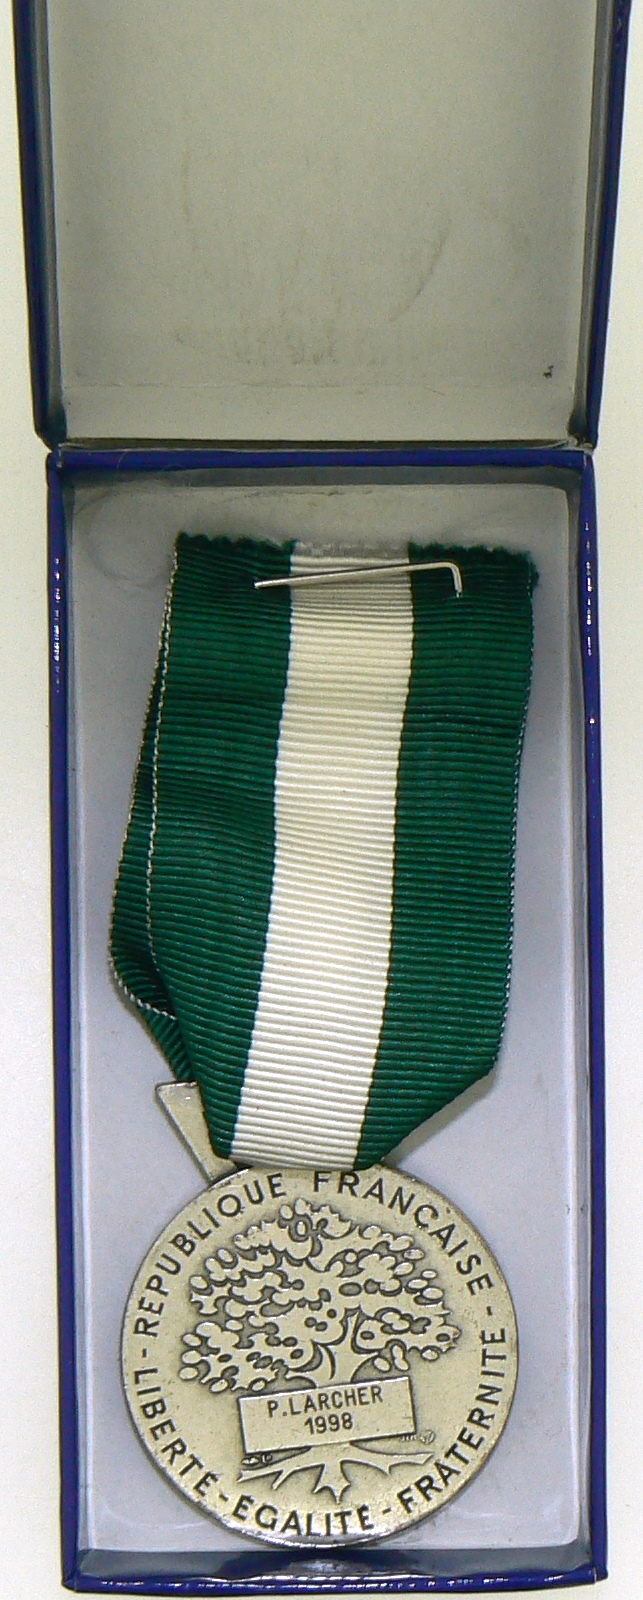 Regional, Departamental and Communal Honor Medal